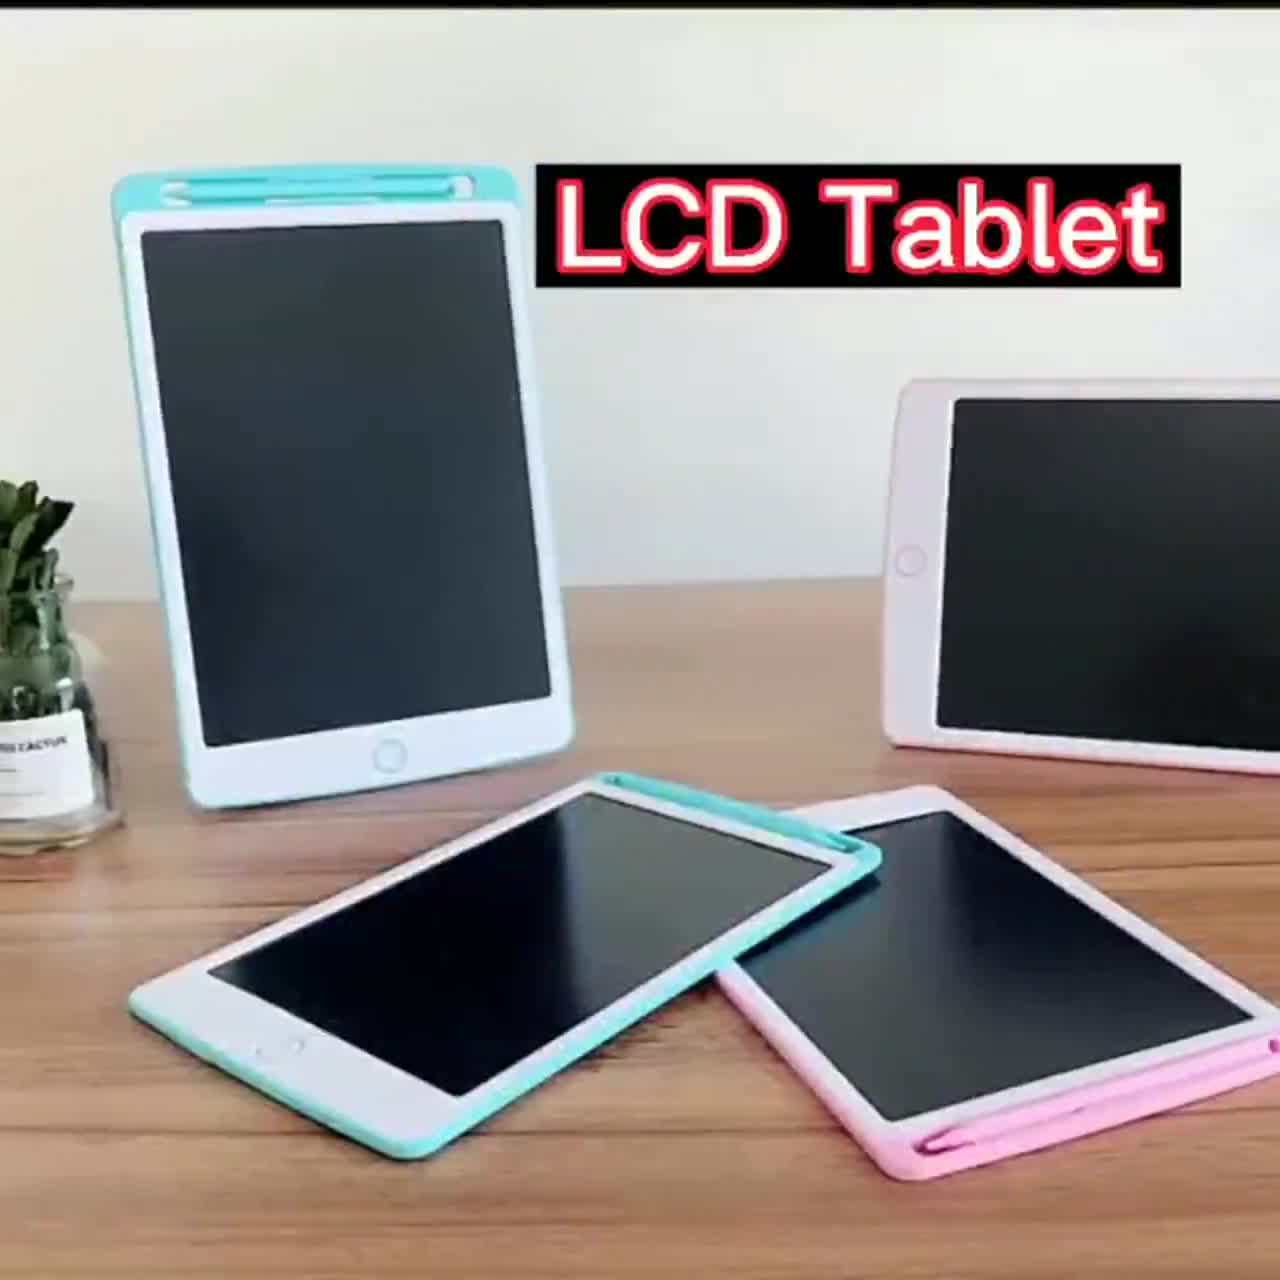 lcd-tablet-8-5-นิ้ว-กระดานรูปภาพอิเล็กทรอนิกส์-กระดานวาดภาพ-หน้าจอสี-หน้าจอขาวดำ-กระดาน-lcd